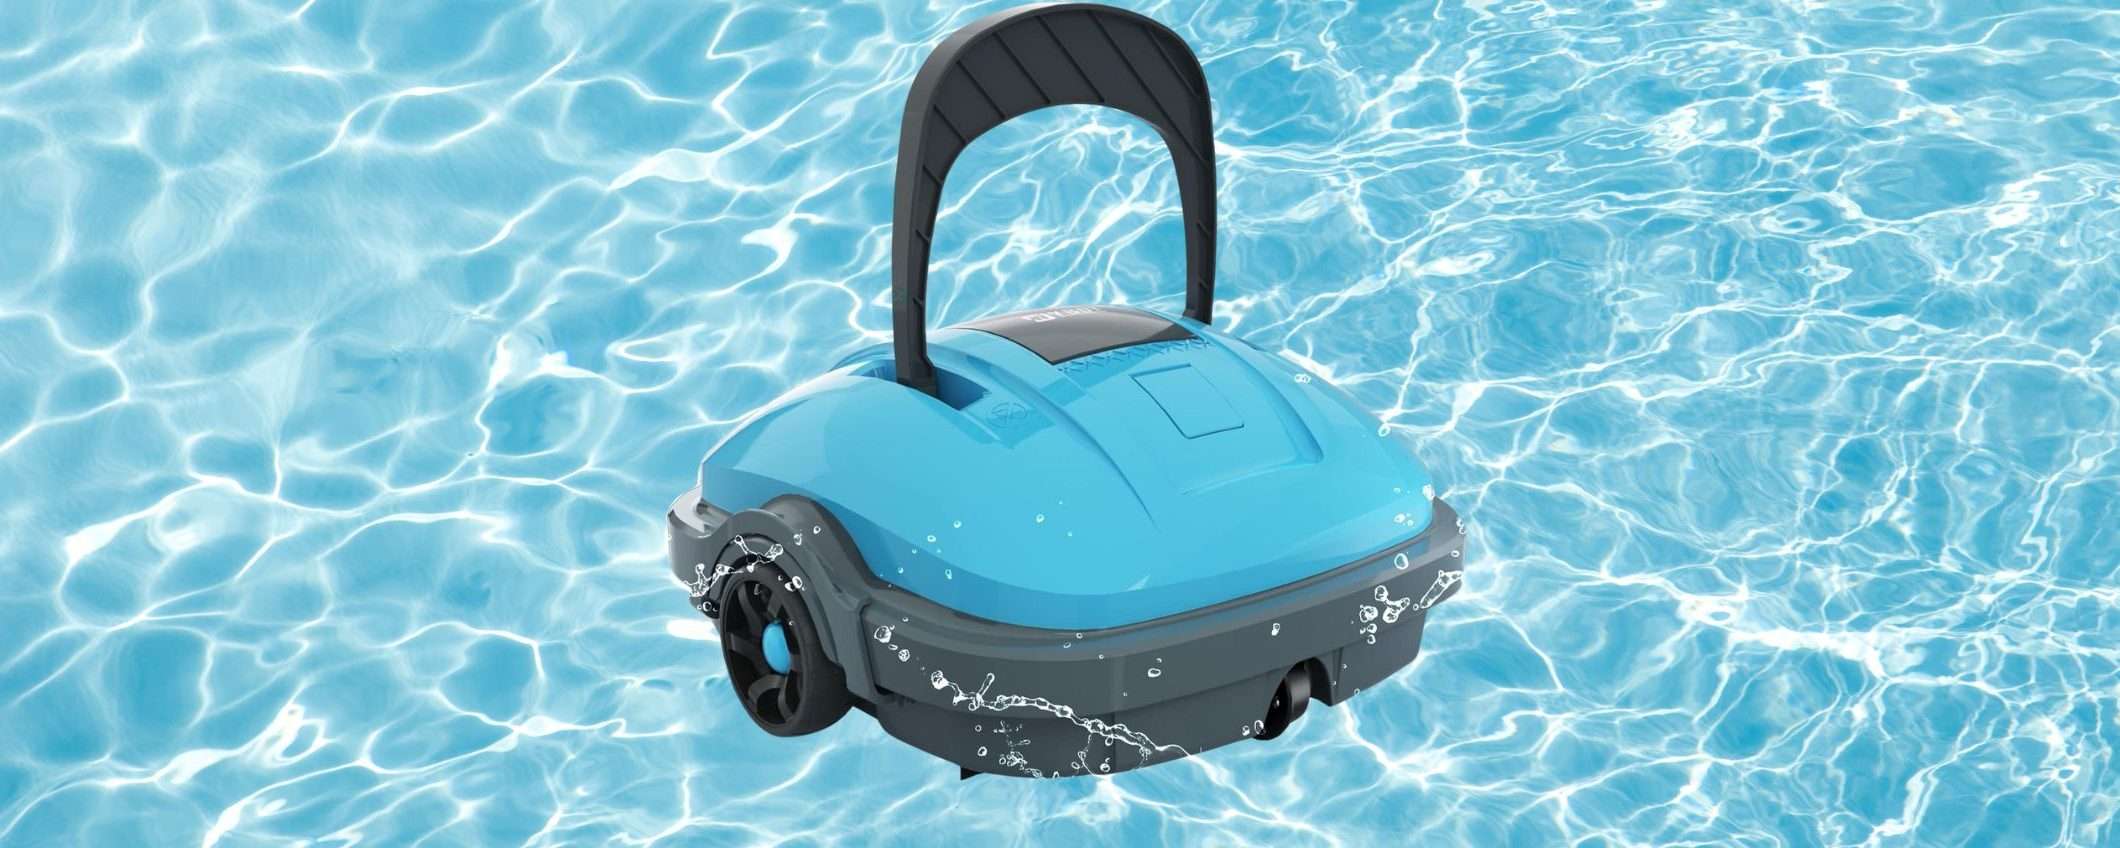 Robot pulisci piscina: AUTOMATICO e in offerta A TEMPO su Amazon (-20%)